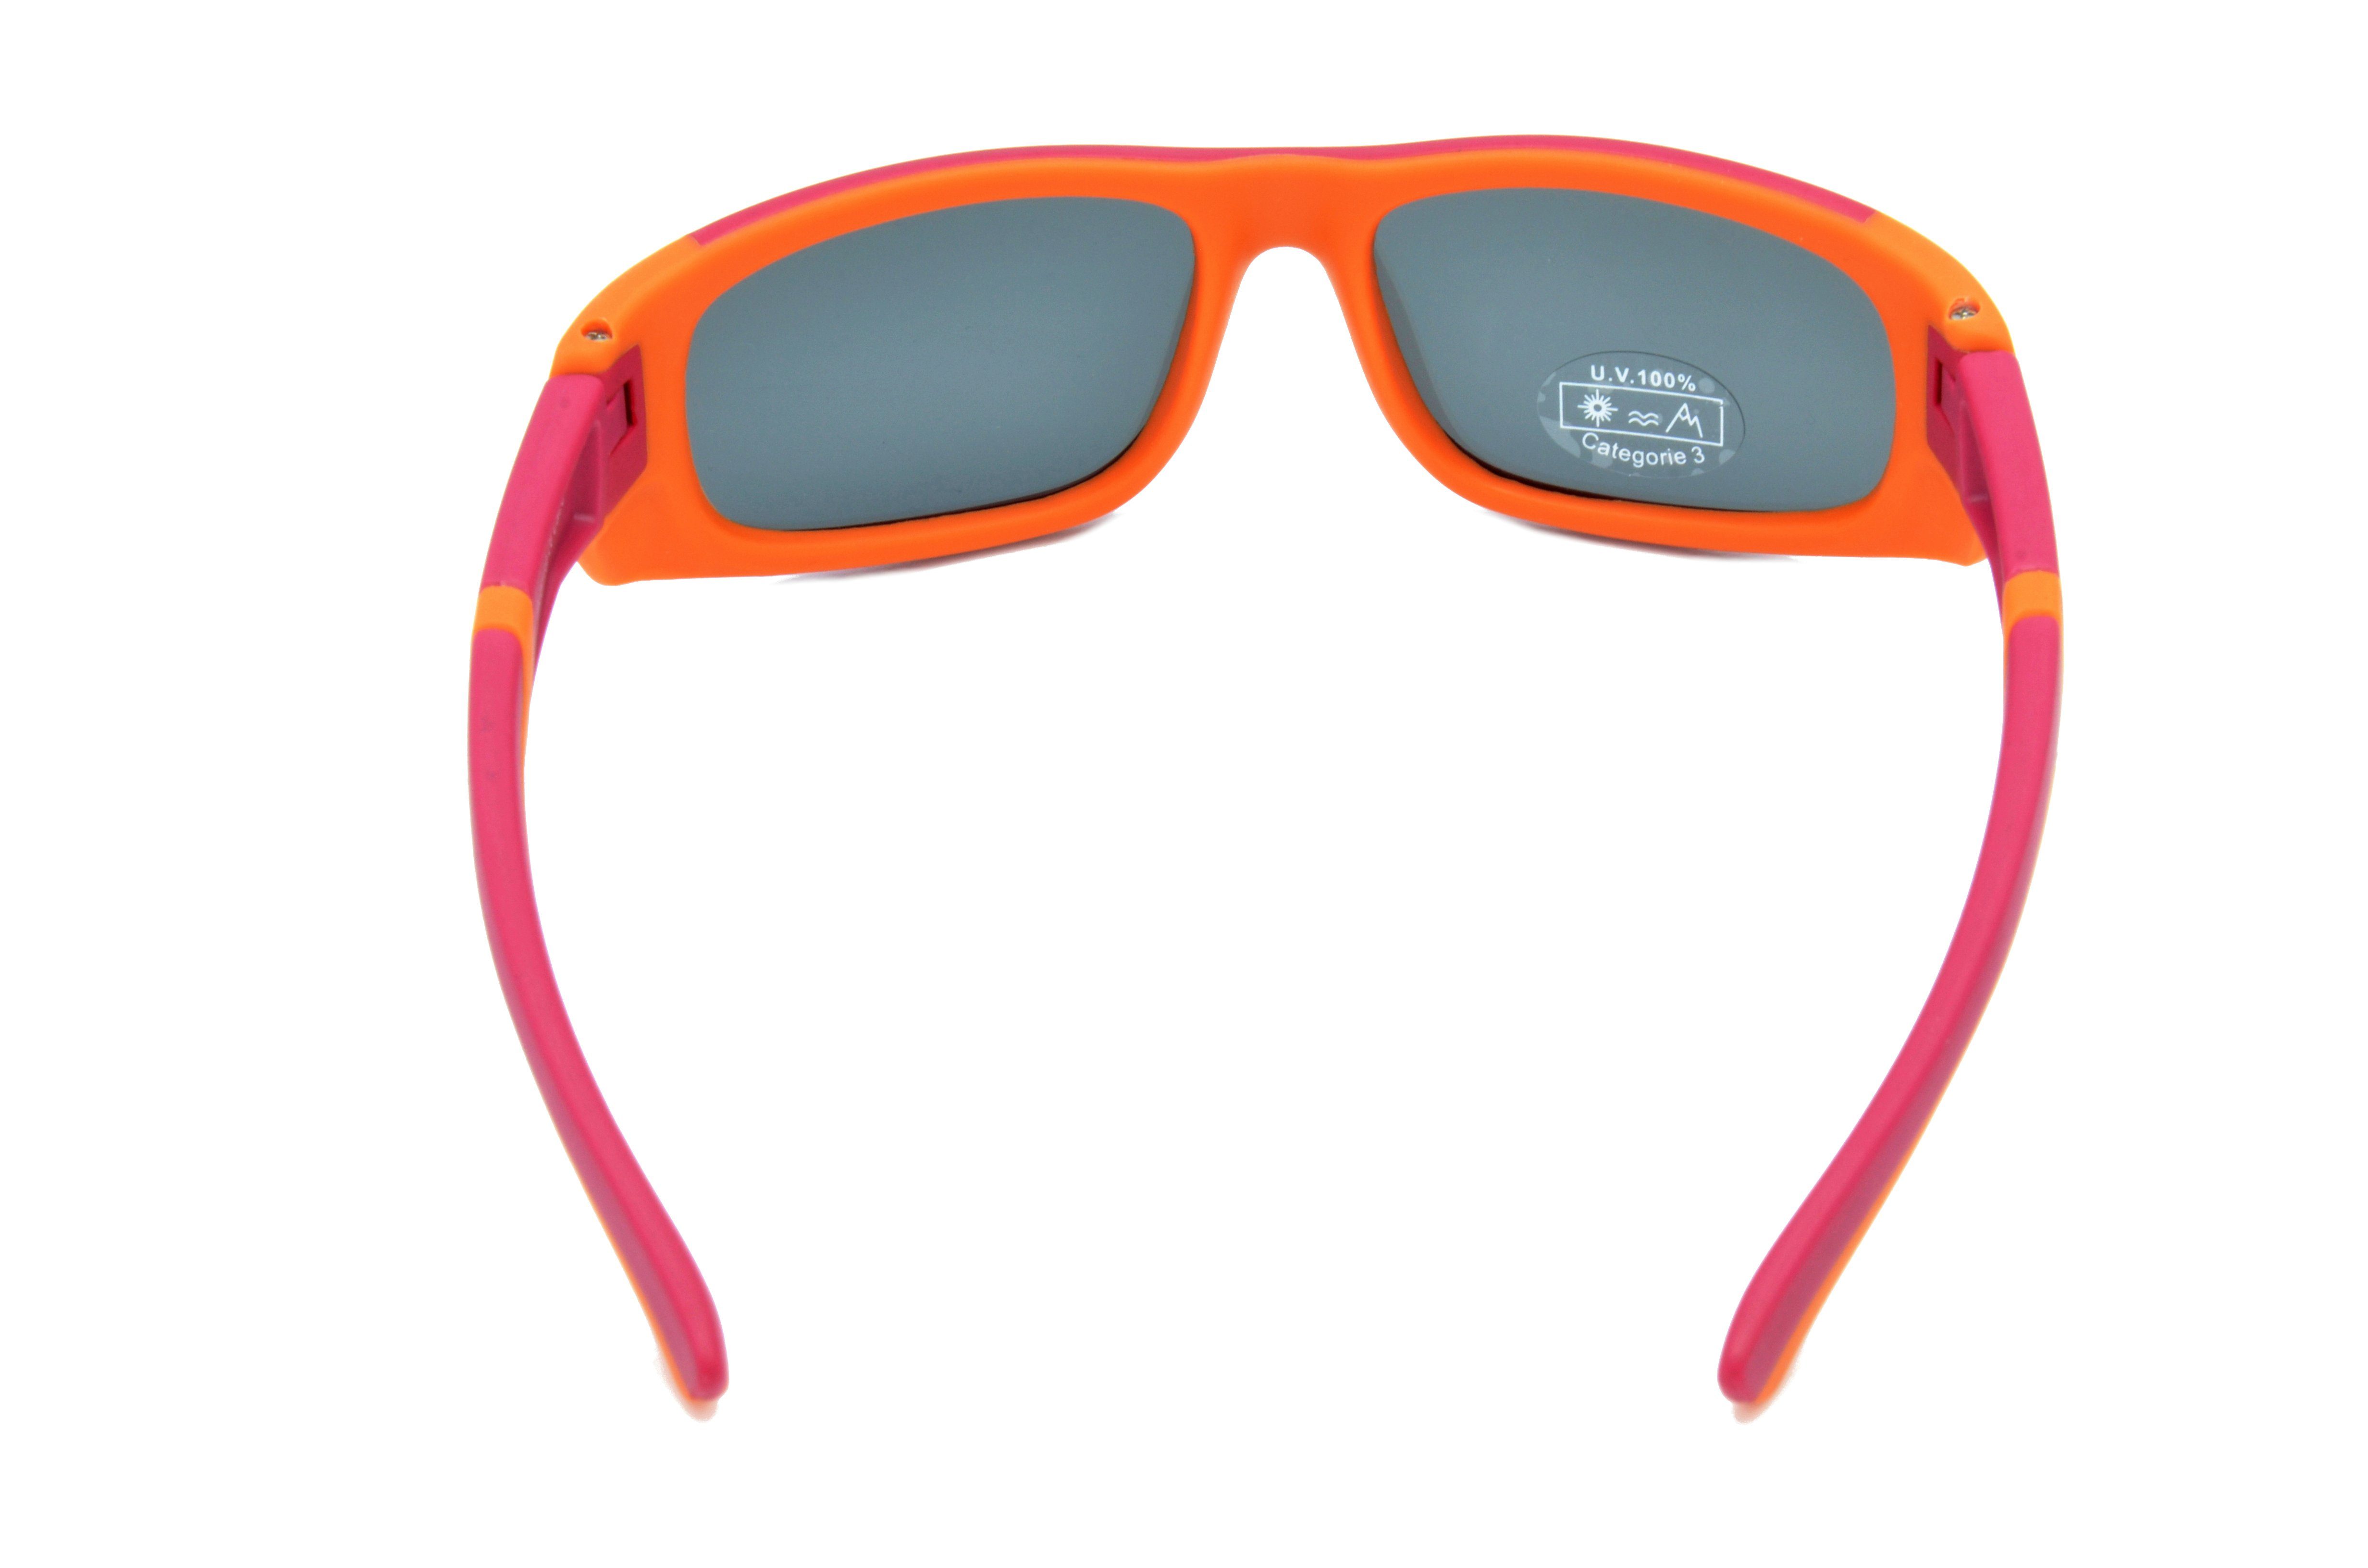 Unisex, Sonnenbrille grau, 6-12 super Jungen Gamswild - Jahre WJ5119 Mädchen dunkelrot orange, - Jugendbrille GAMSKIDS flexible Kinderbrille blau -orange Bügel grün